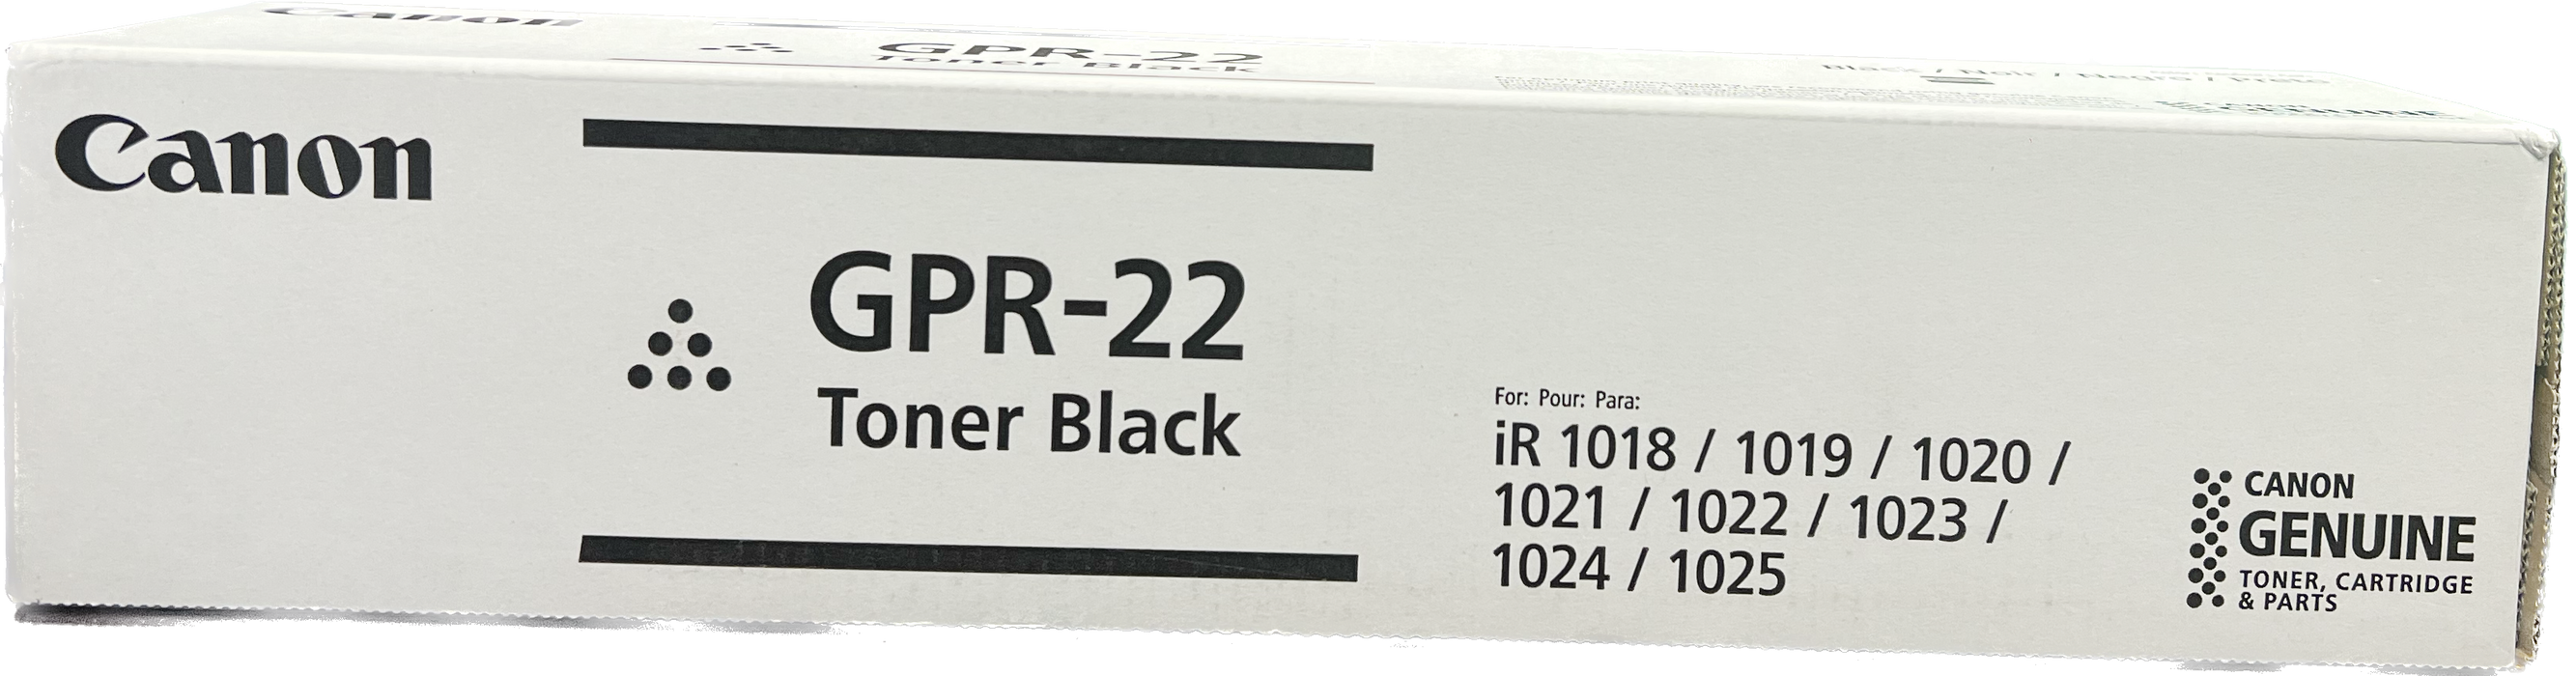 Genuine Canon Black Toner Cartridge | 0386B003 | GPR-22K